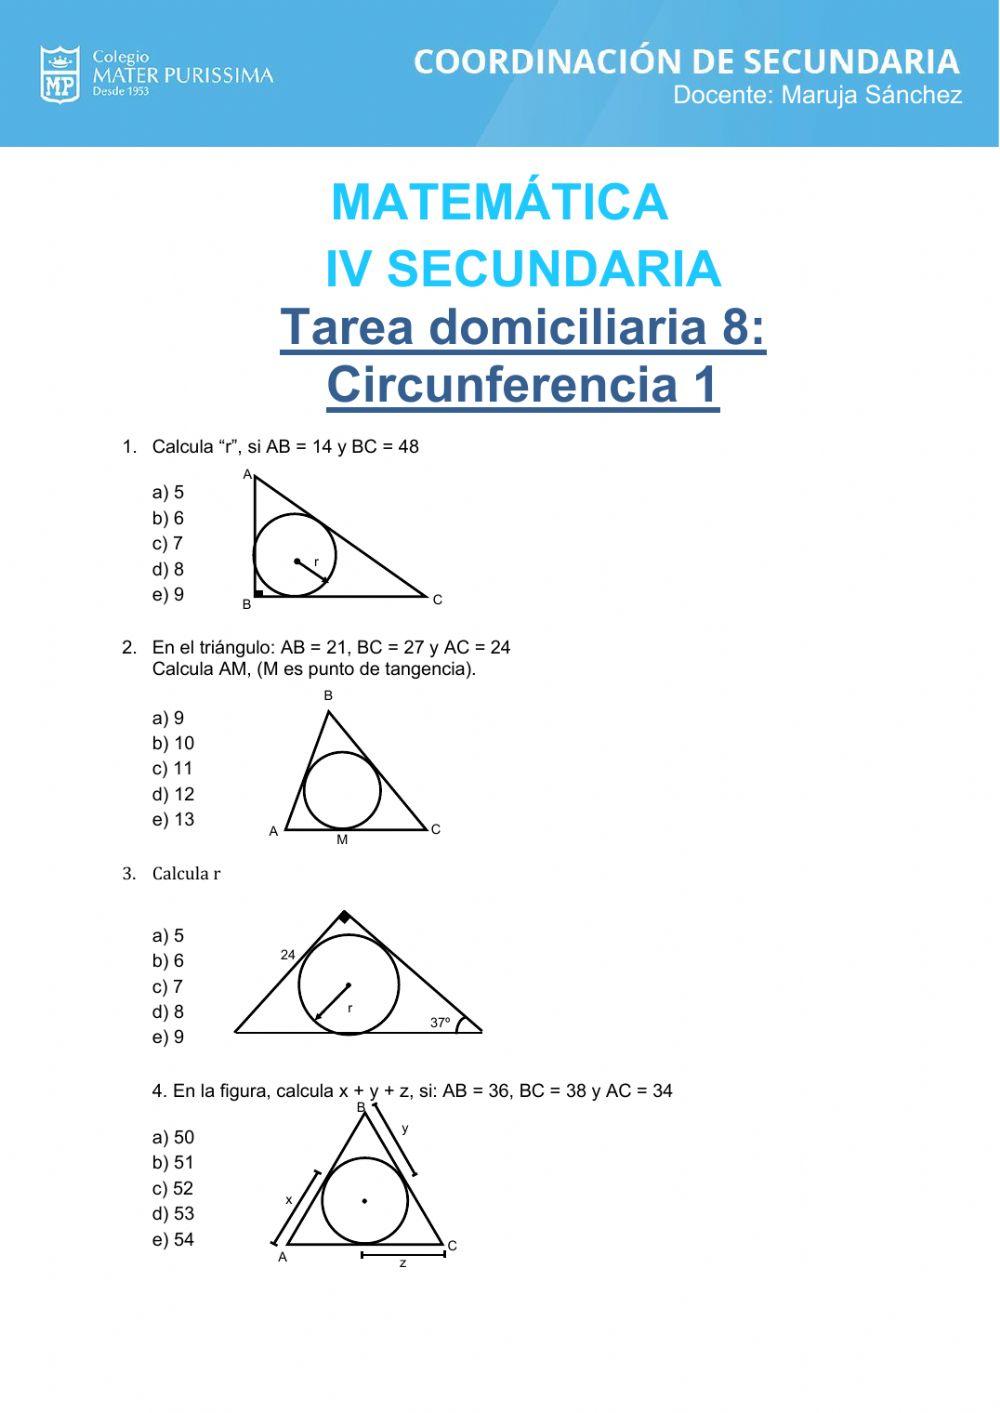 Circunferencia 1